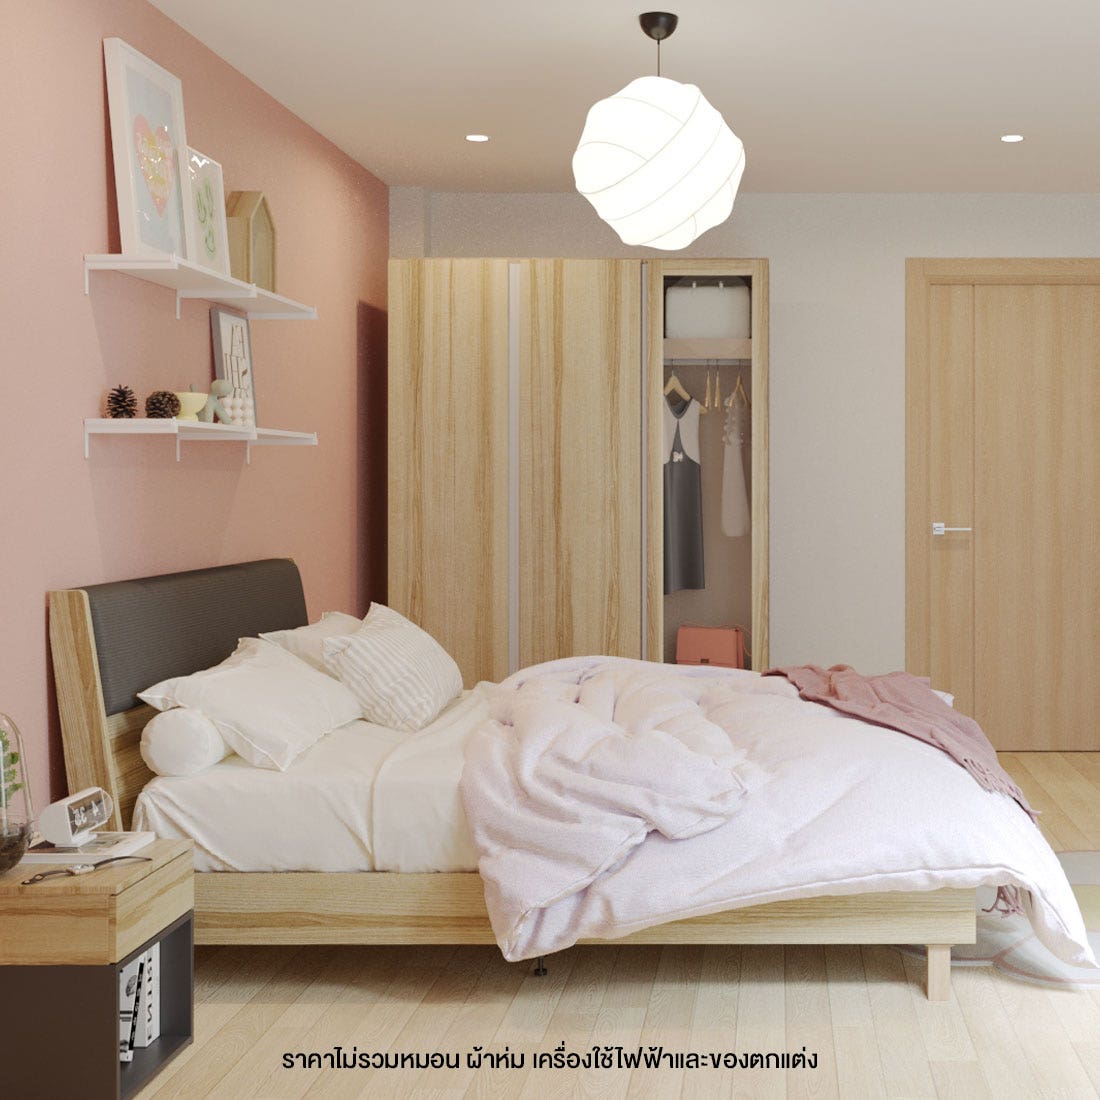 ชุดห้องนอน 6 ฟุต รุ่น Benita & ตู้ Blox 150 ซม. สีไม้อ่อน01